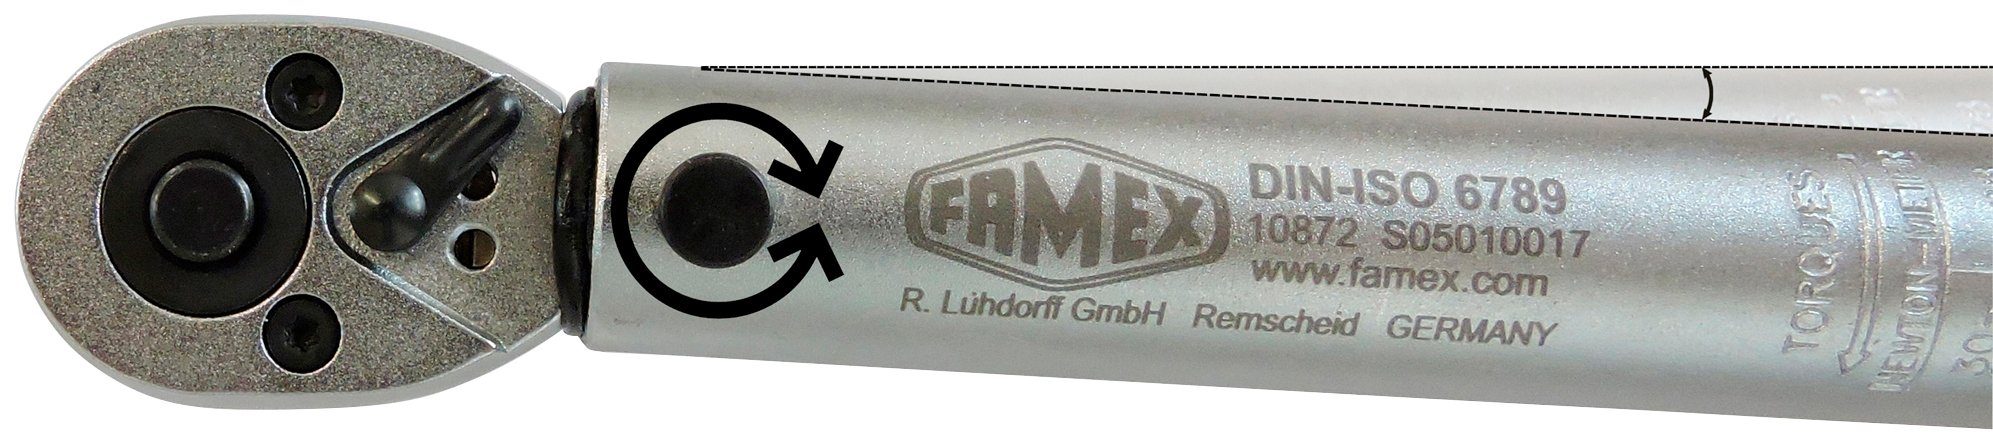 FAMEX Drehmomentschlüssel 10869 - PROFESSIONAL - 10 20-110 R+L, Nm (3/8-Zoll)-Antrieb, mm